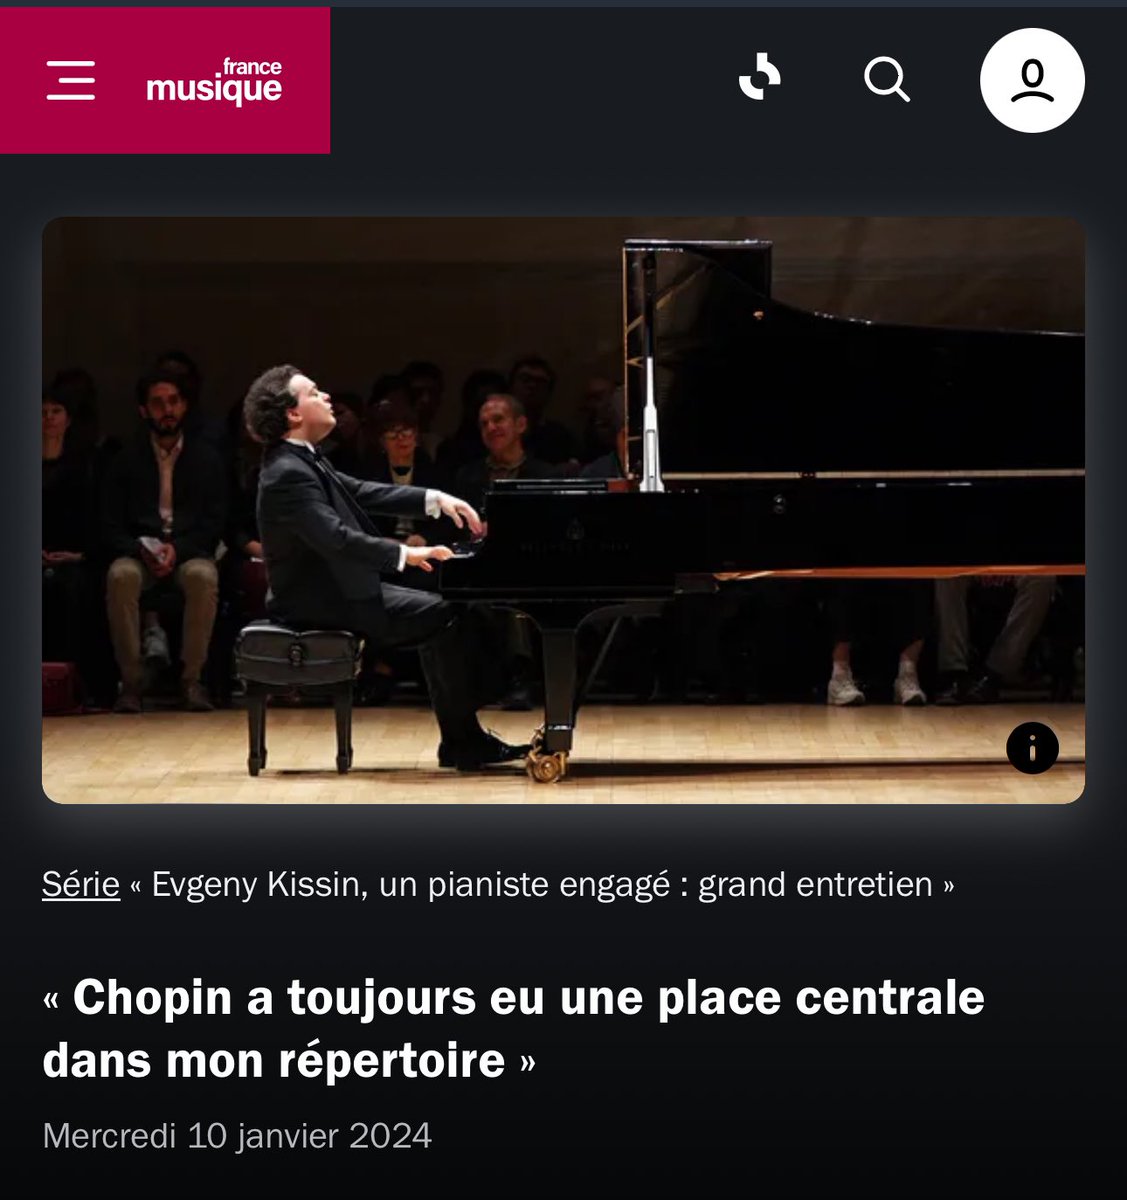 [GRANDSENTRETIENS] Evgeny Kissin : « Chopin a toujours eu une place centrale dans mon répertoire » via @francemusique @DitaOpera #podcast radiofrance.fr/francemusique/…